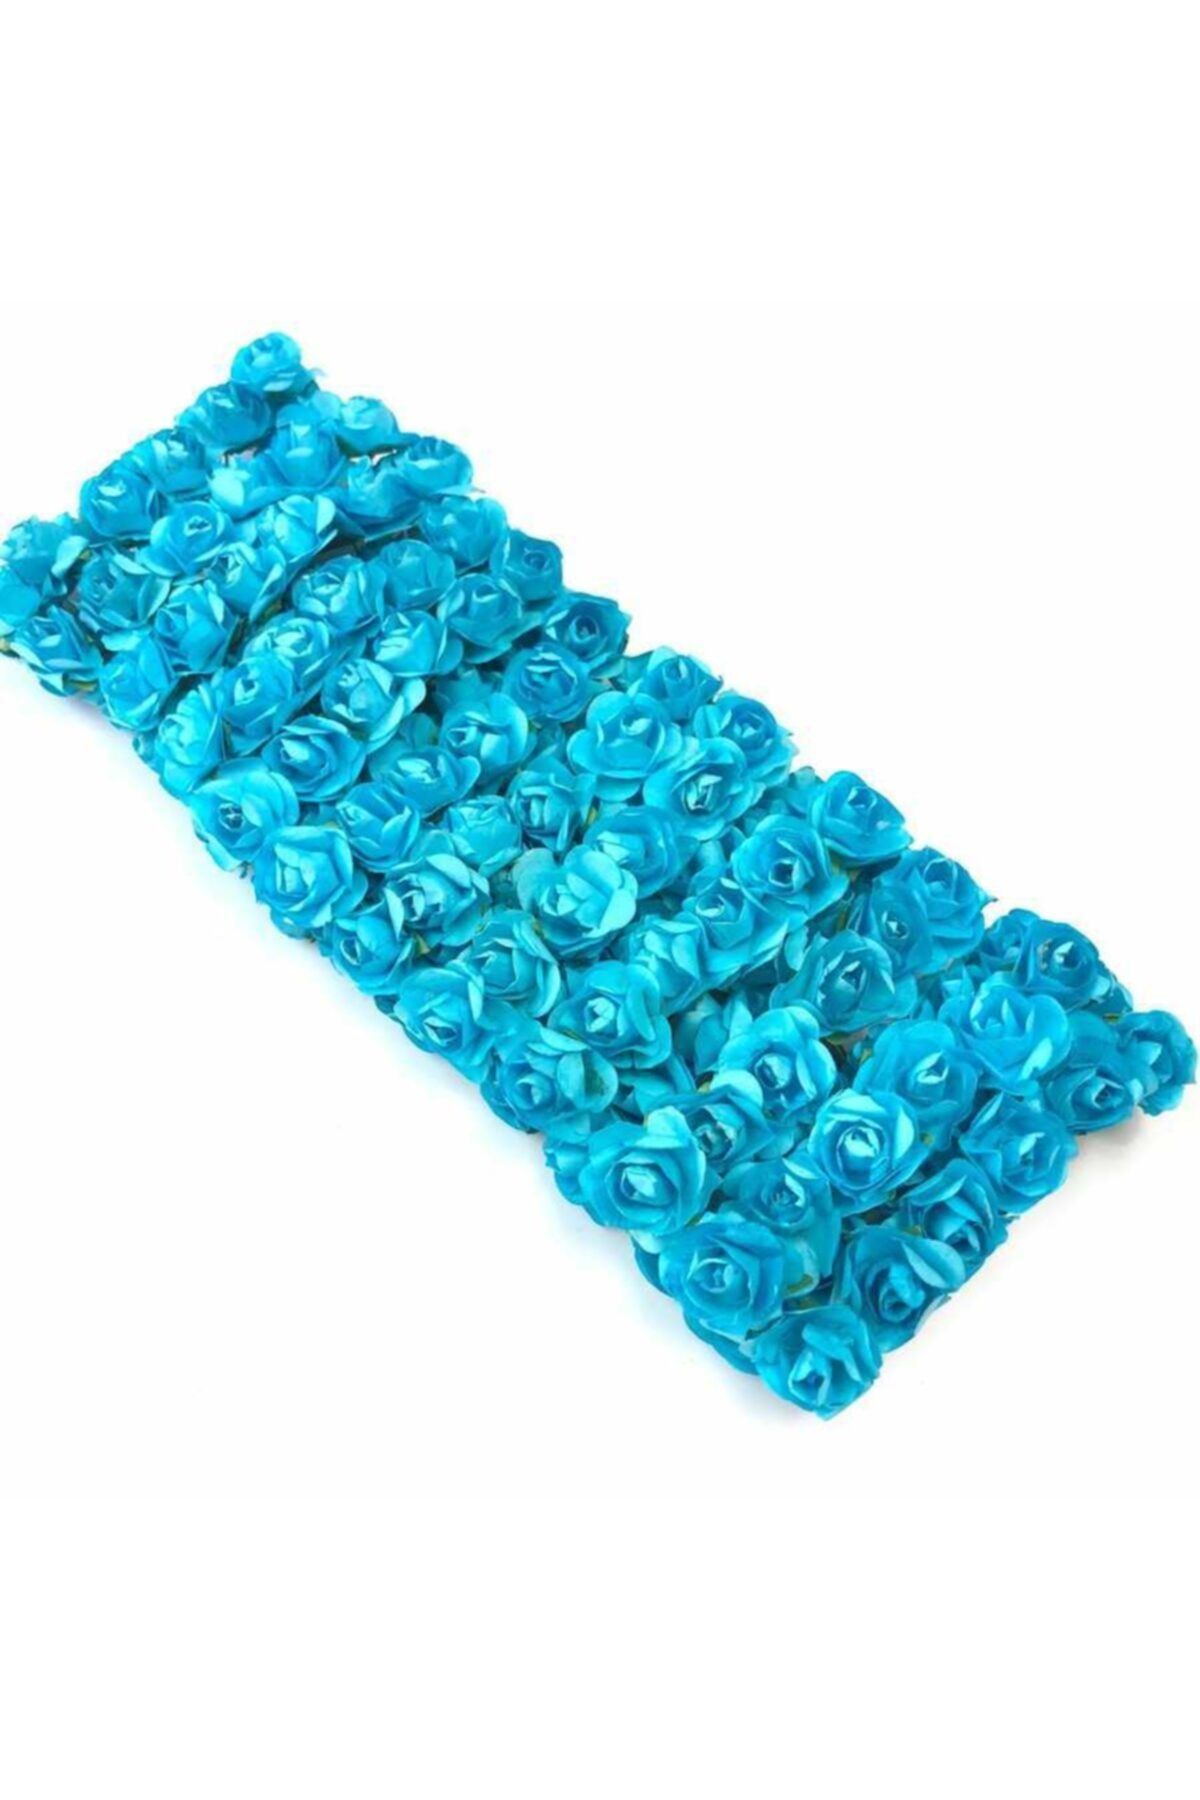 Deniz Party Store Kağıt Çiçek Kağıt Gül 144 Lü Paket Küçük Boy Mavi Renk Kına Nikah Nişan Hediyelik Süsleme Malzemesi